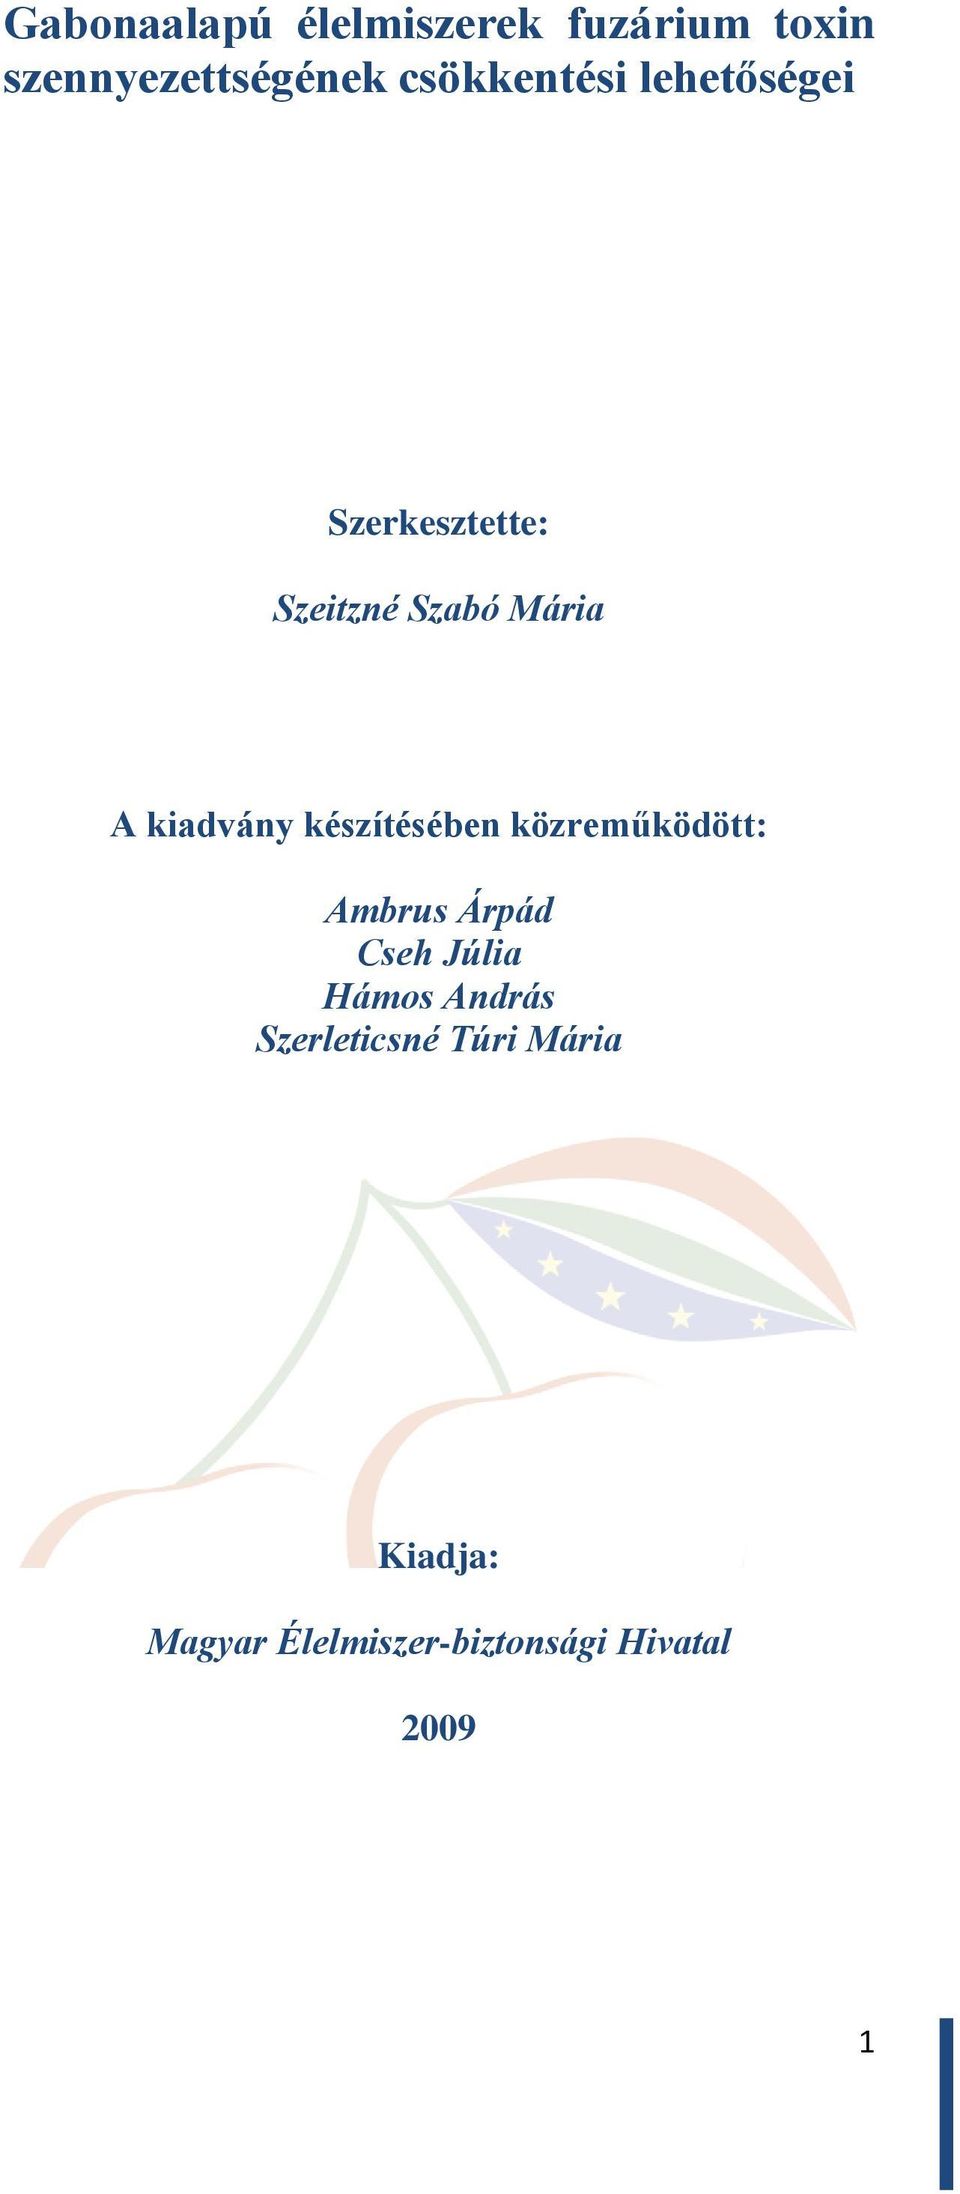 kiadvány készítésében közreműködött: Ambrus Árpád Cseh Júlia Hámos